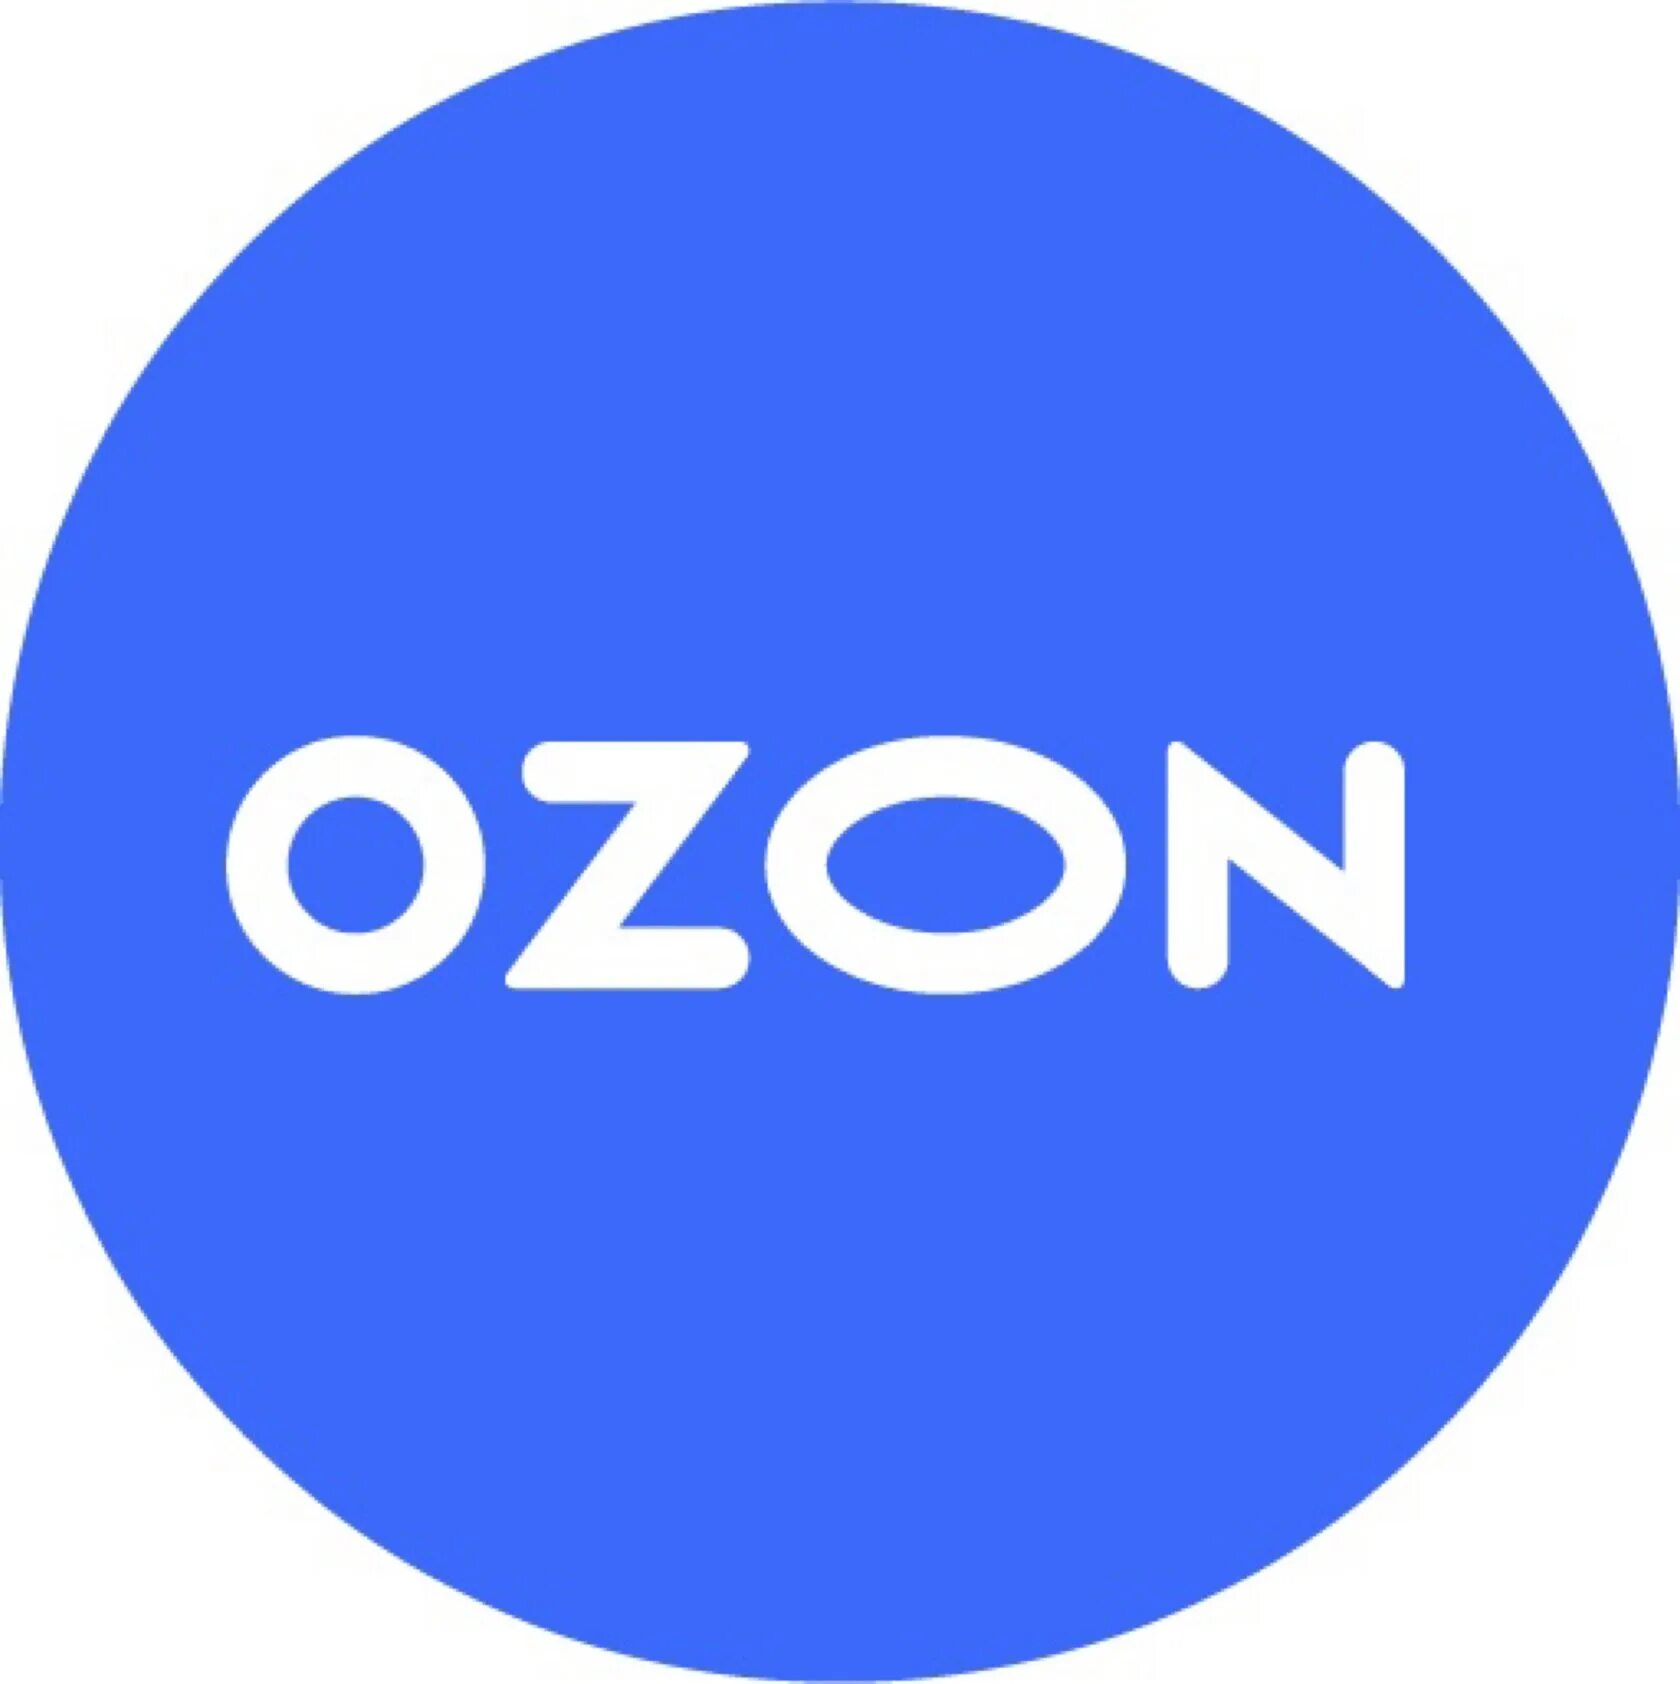 Озон болотное. Озон. Озон логотип. Логотип Озон круглый. Осан.